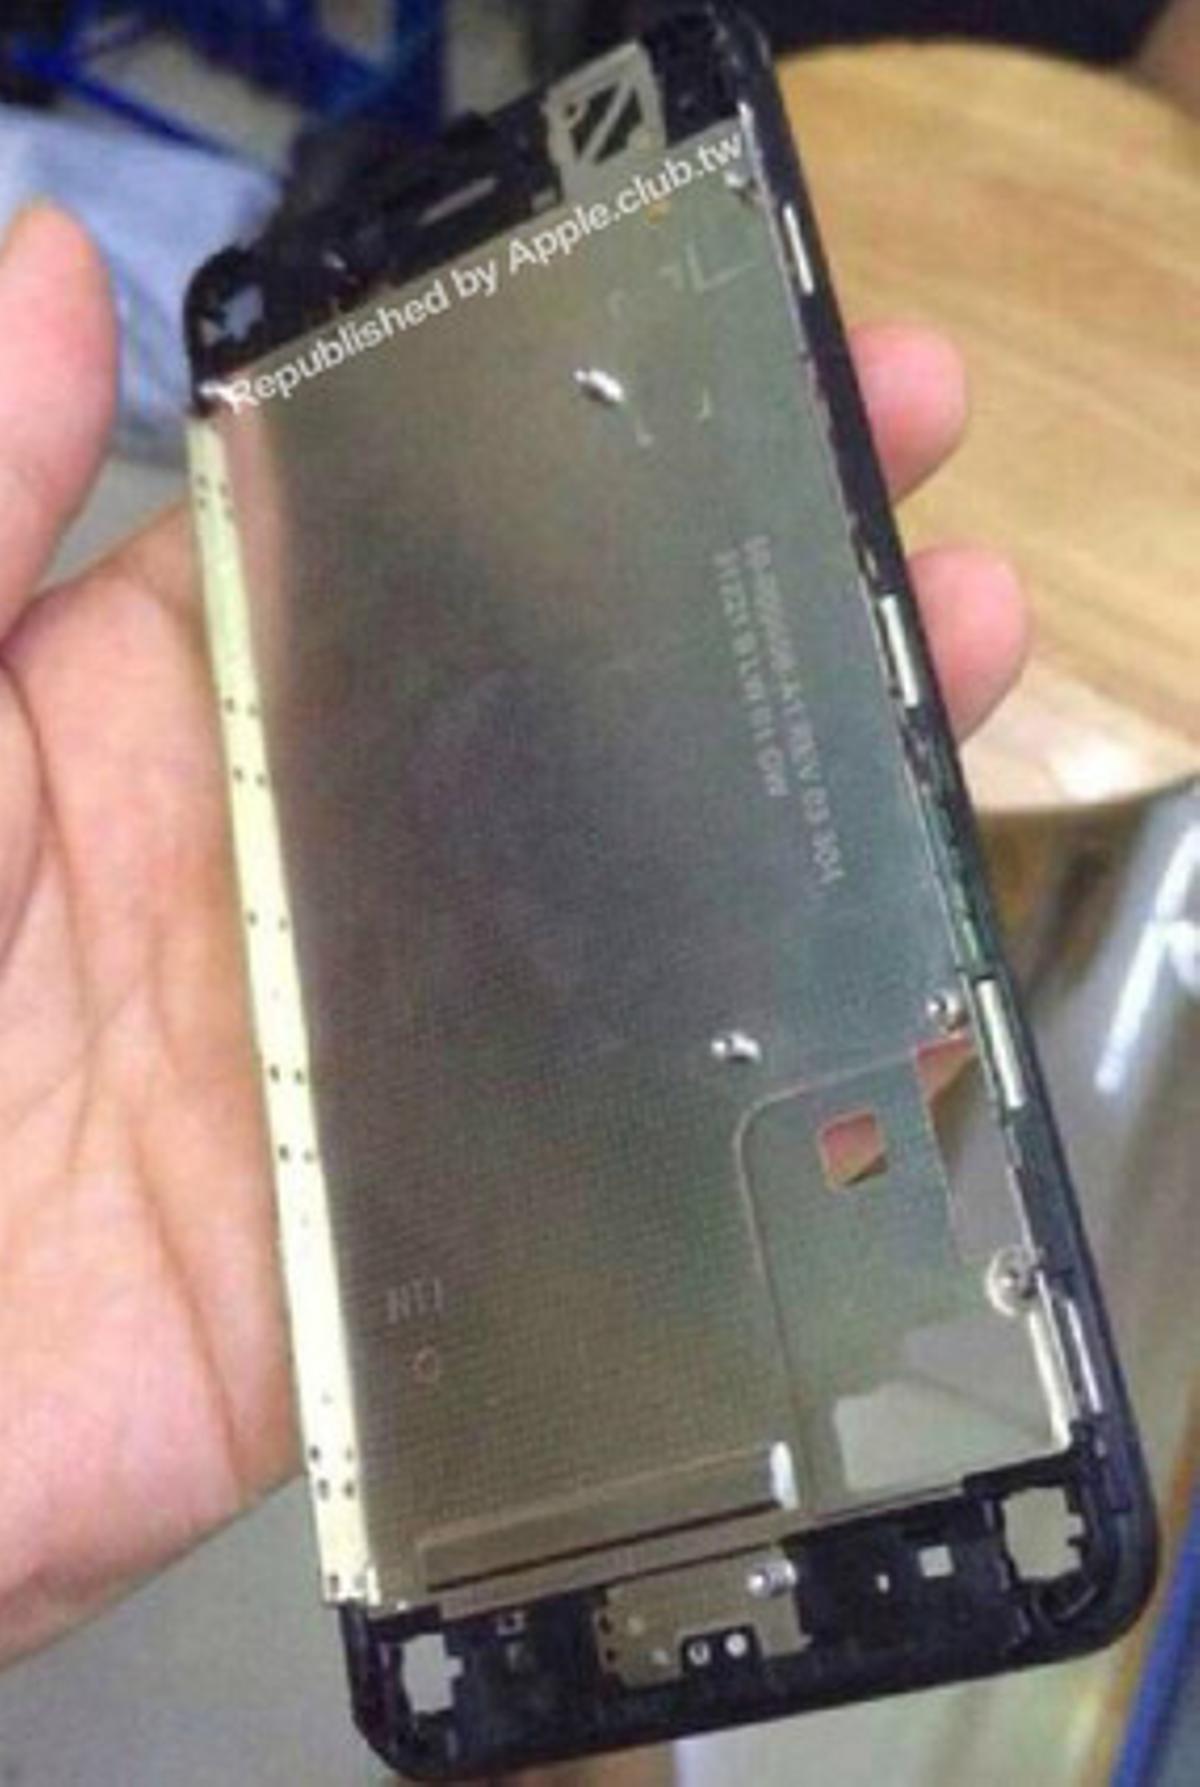 Disseny de carcassa per a l’iPhone6.